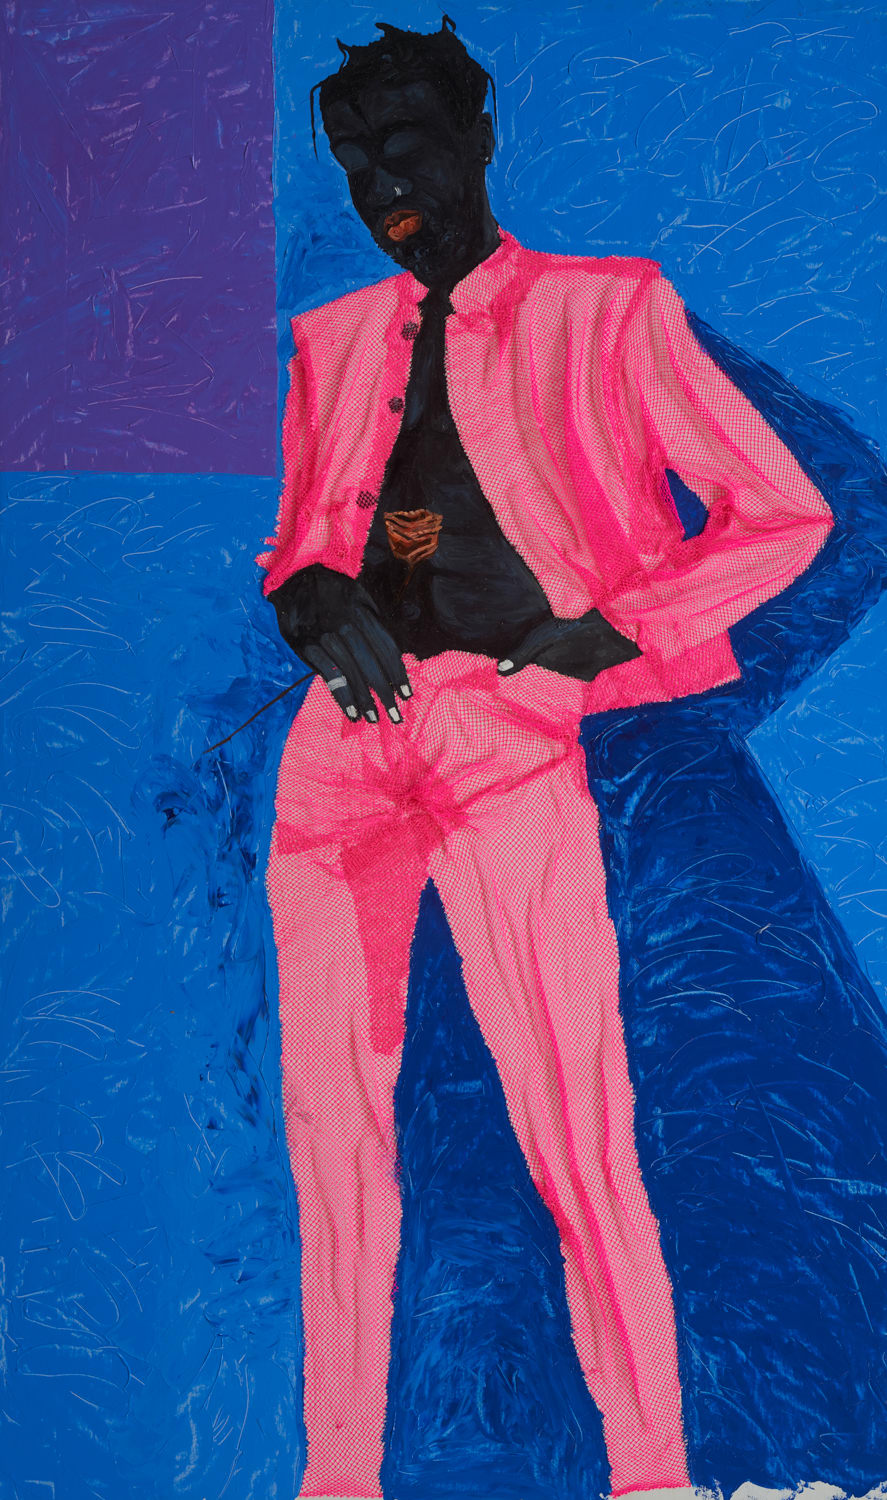 Eric Adjei Tawiah, Pink Suit, 2020